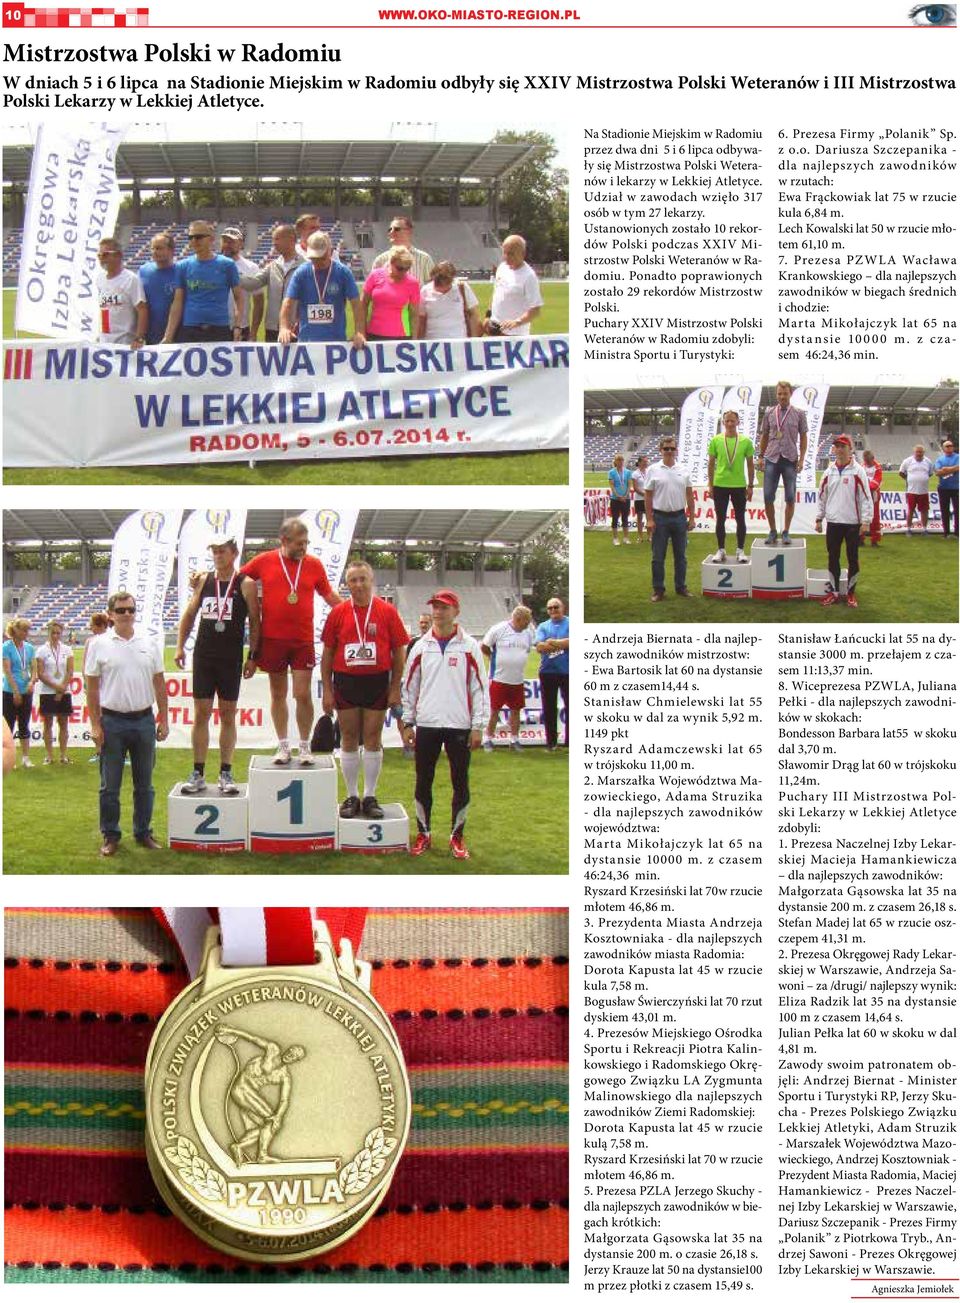 Na Stadionie Miejskim w Radomiu przez dwa dni 5 i 6 lipca odbywały się Mistrzostwa Polski Weteranów i lekarzy w Lekkiej Atletyce. Udział w zawodach wzięło 317 osób w tym 27 lekarzy.